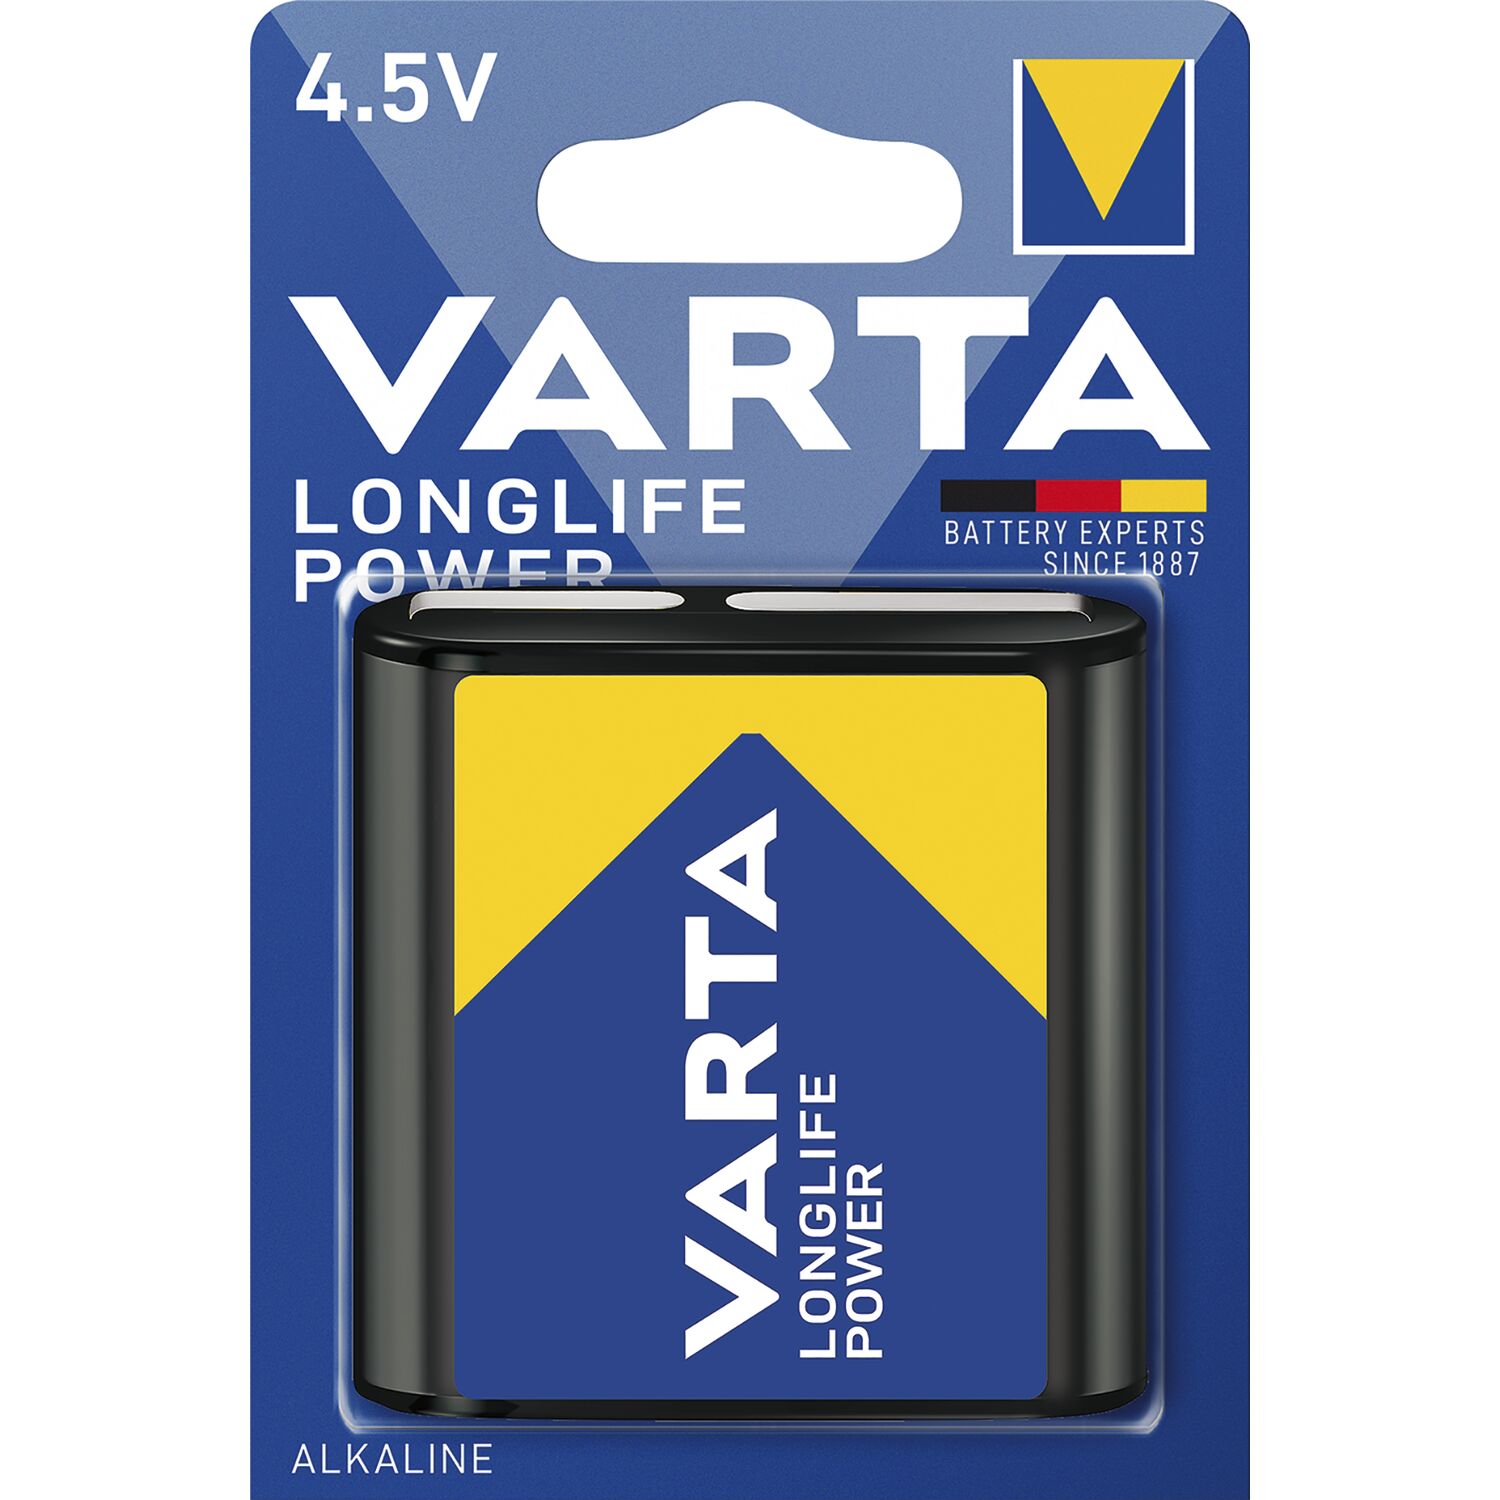 VARTA Batterie Longlife Stück 1 4.5V Power 3LR12